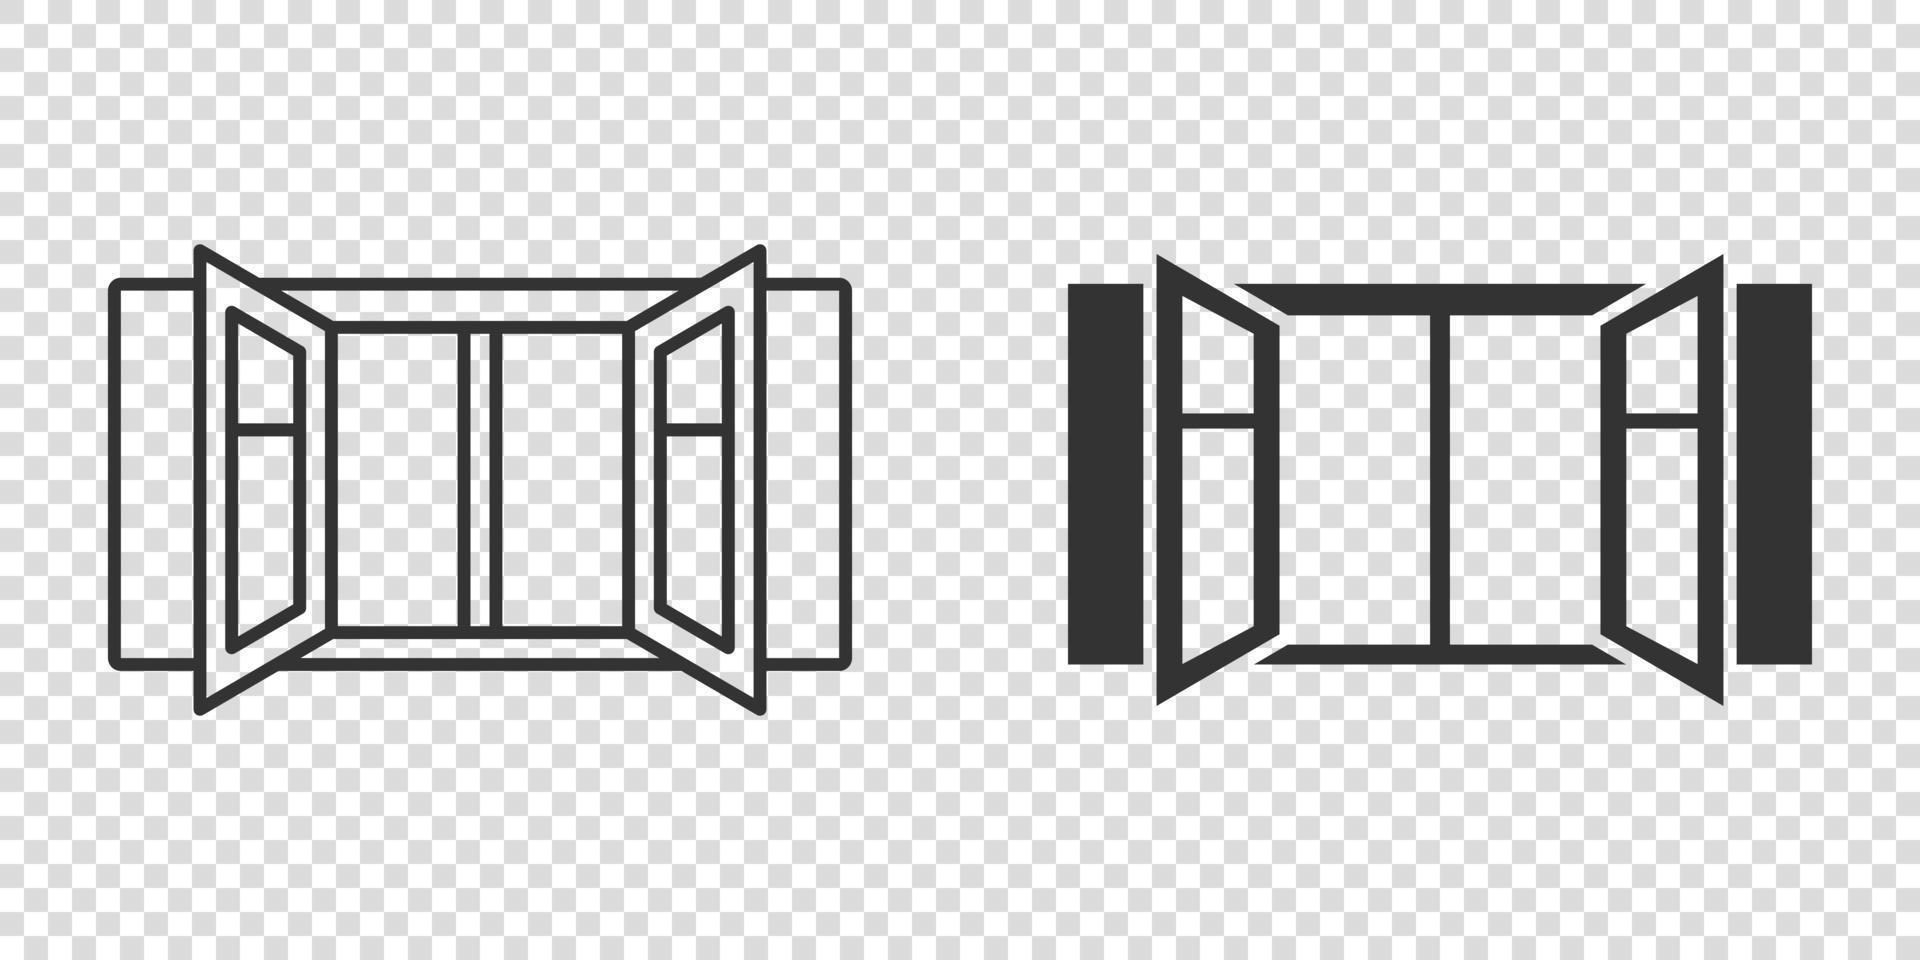 ícone de janela em estilo simples. ilustração em vetor casement em fundo isolado. conceito de negócio de sinal interior de casa.